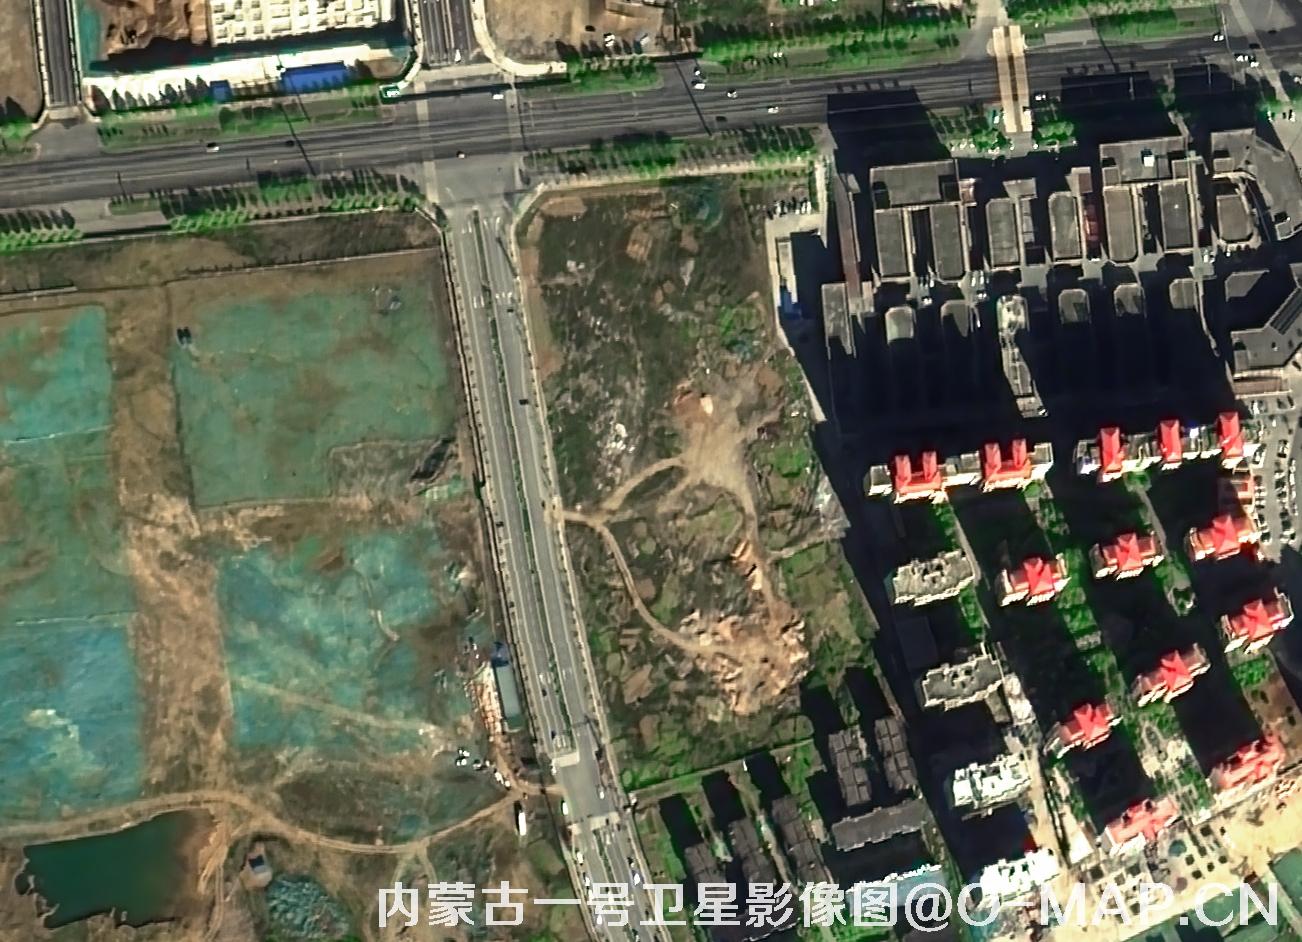 内蒙古一号卫星拍摄的0.5米工业空地影像图